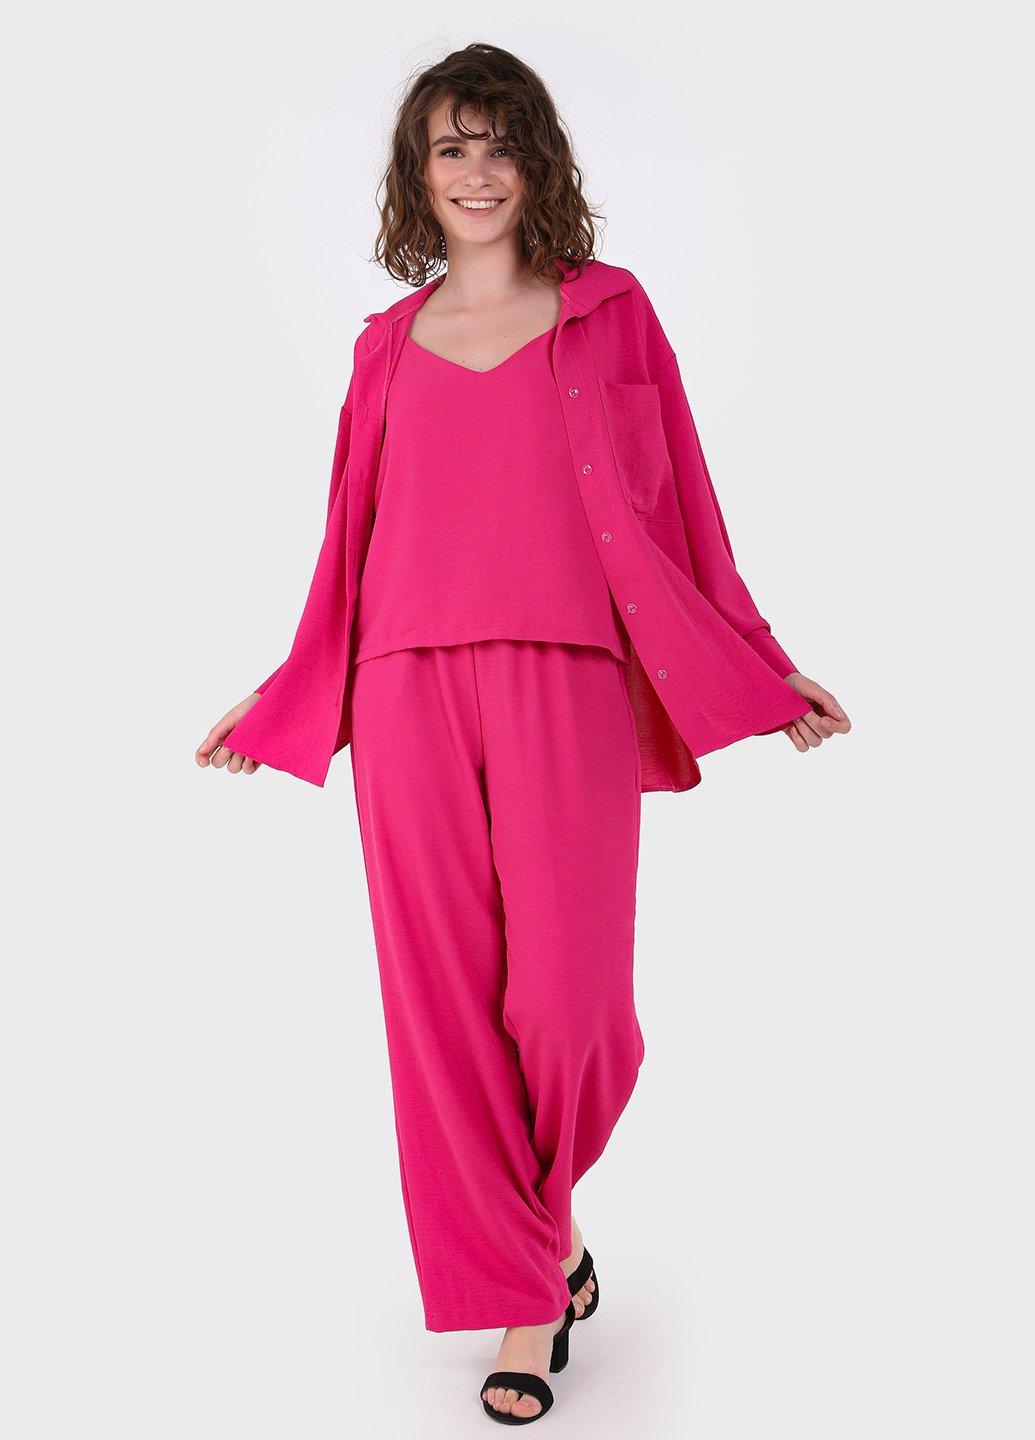 Купить Модный летний костюм женский малинового цвета Merlini Тройка 100000128, размер 42-44 в интернет-магазине